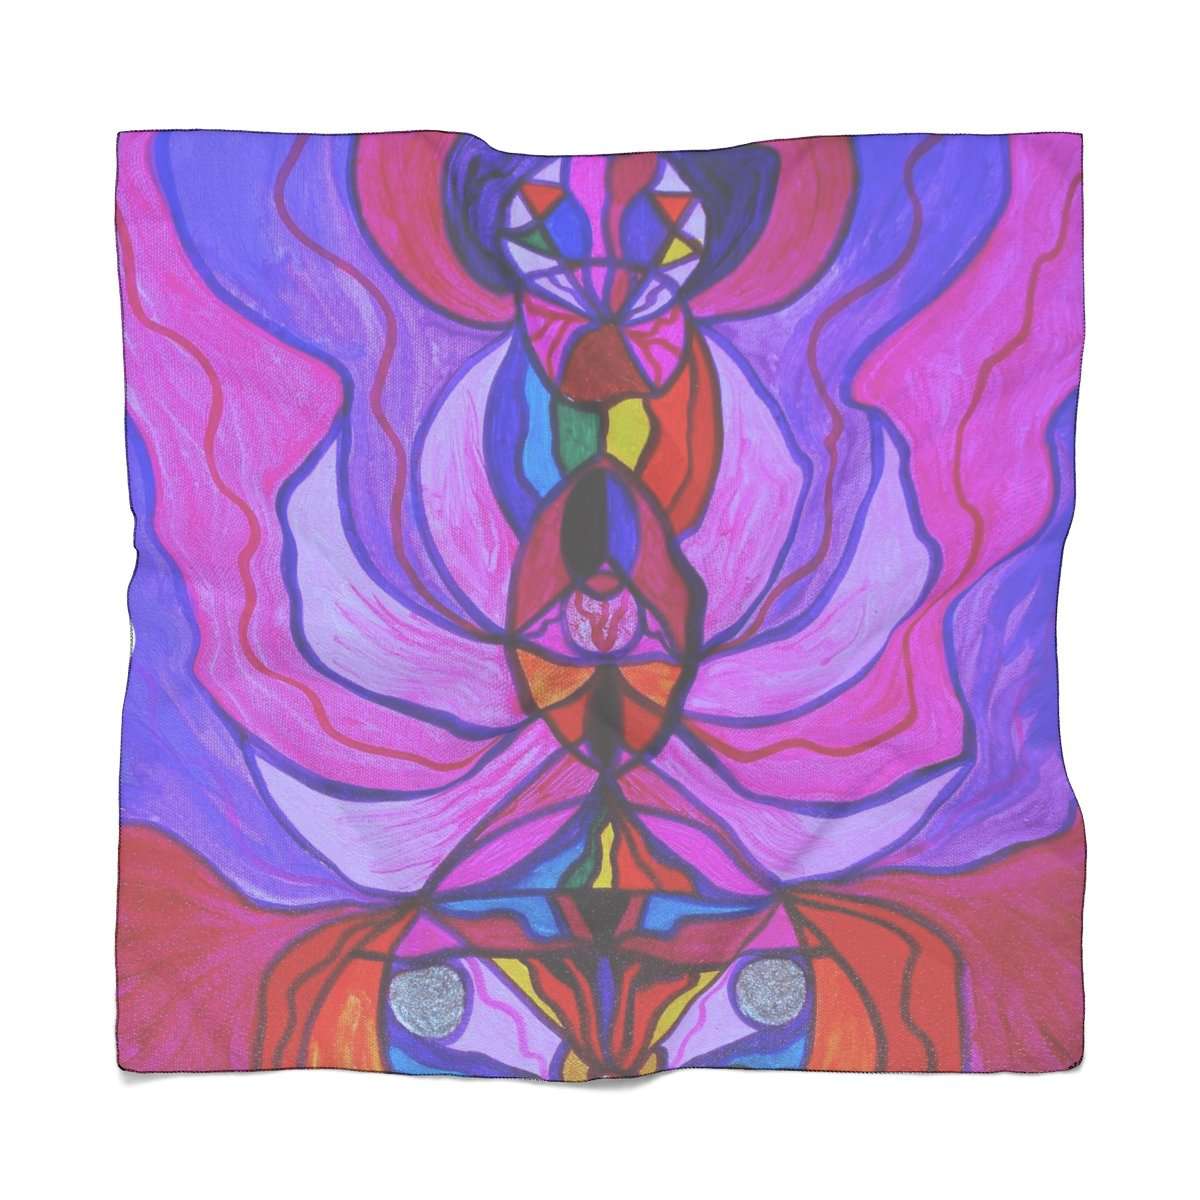 Božská ženská aktivace - frekvenční šátek